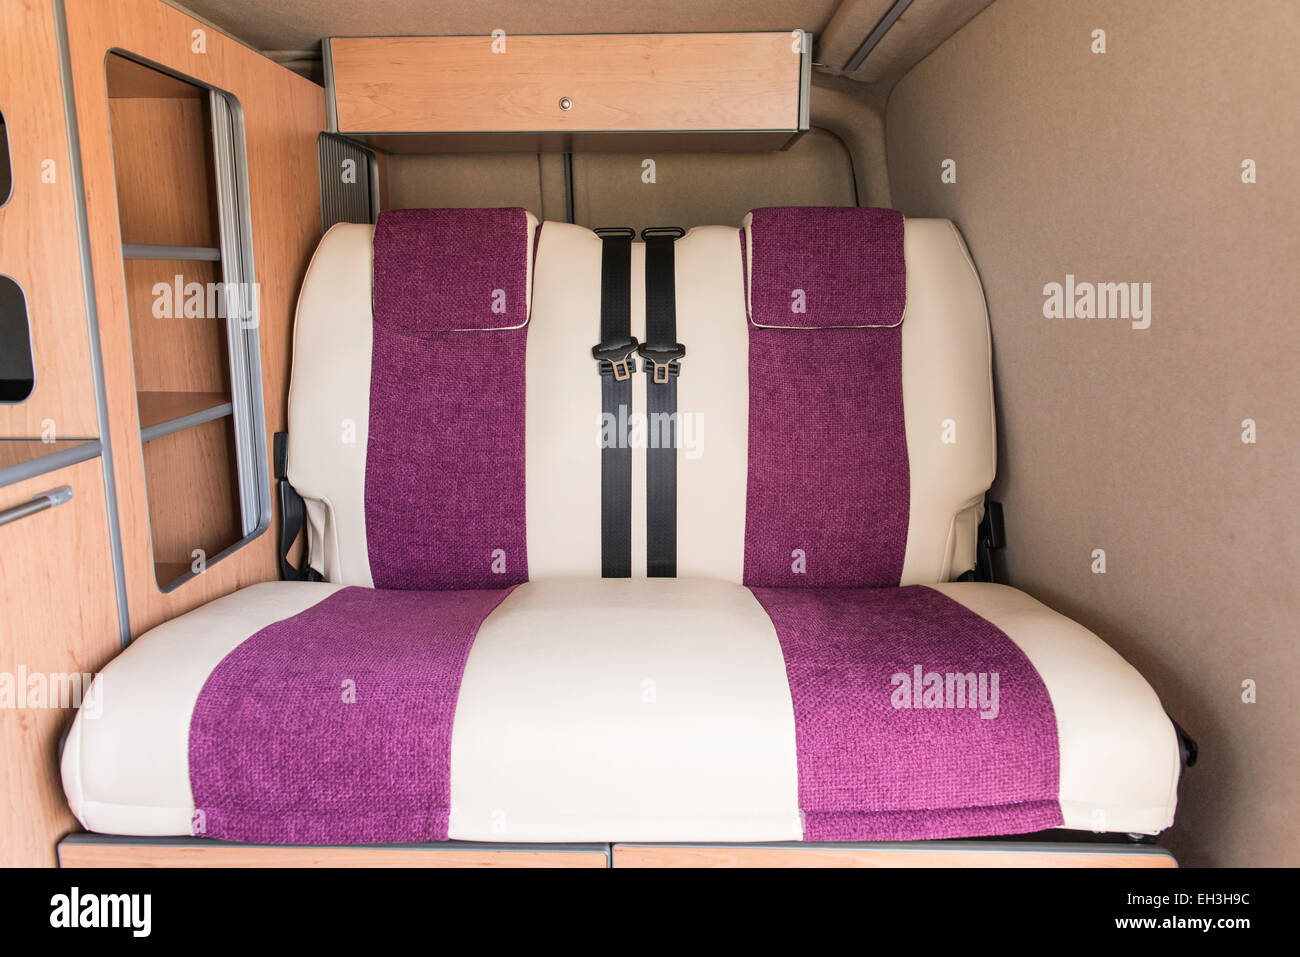 Eine benutzerdefinierte baute Volkswagen VW Campingbus bereit für Reisen rund um und schlafen / Leben in Luxus und frei zu sein Stockfoto